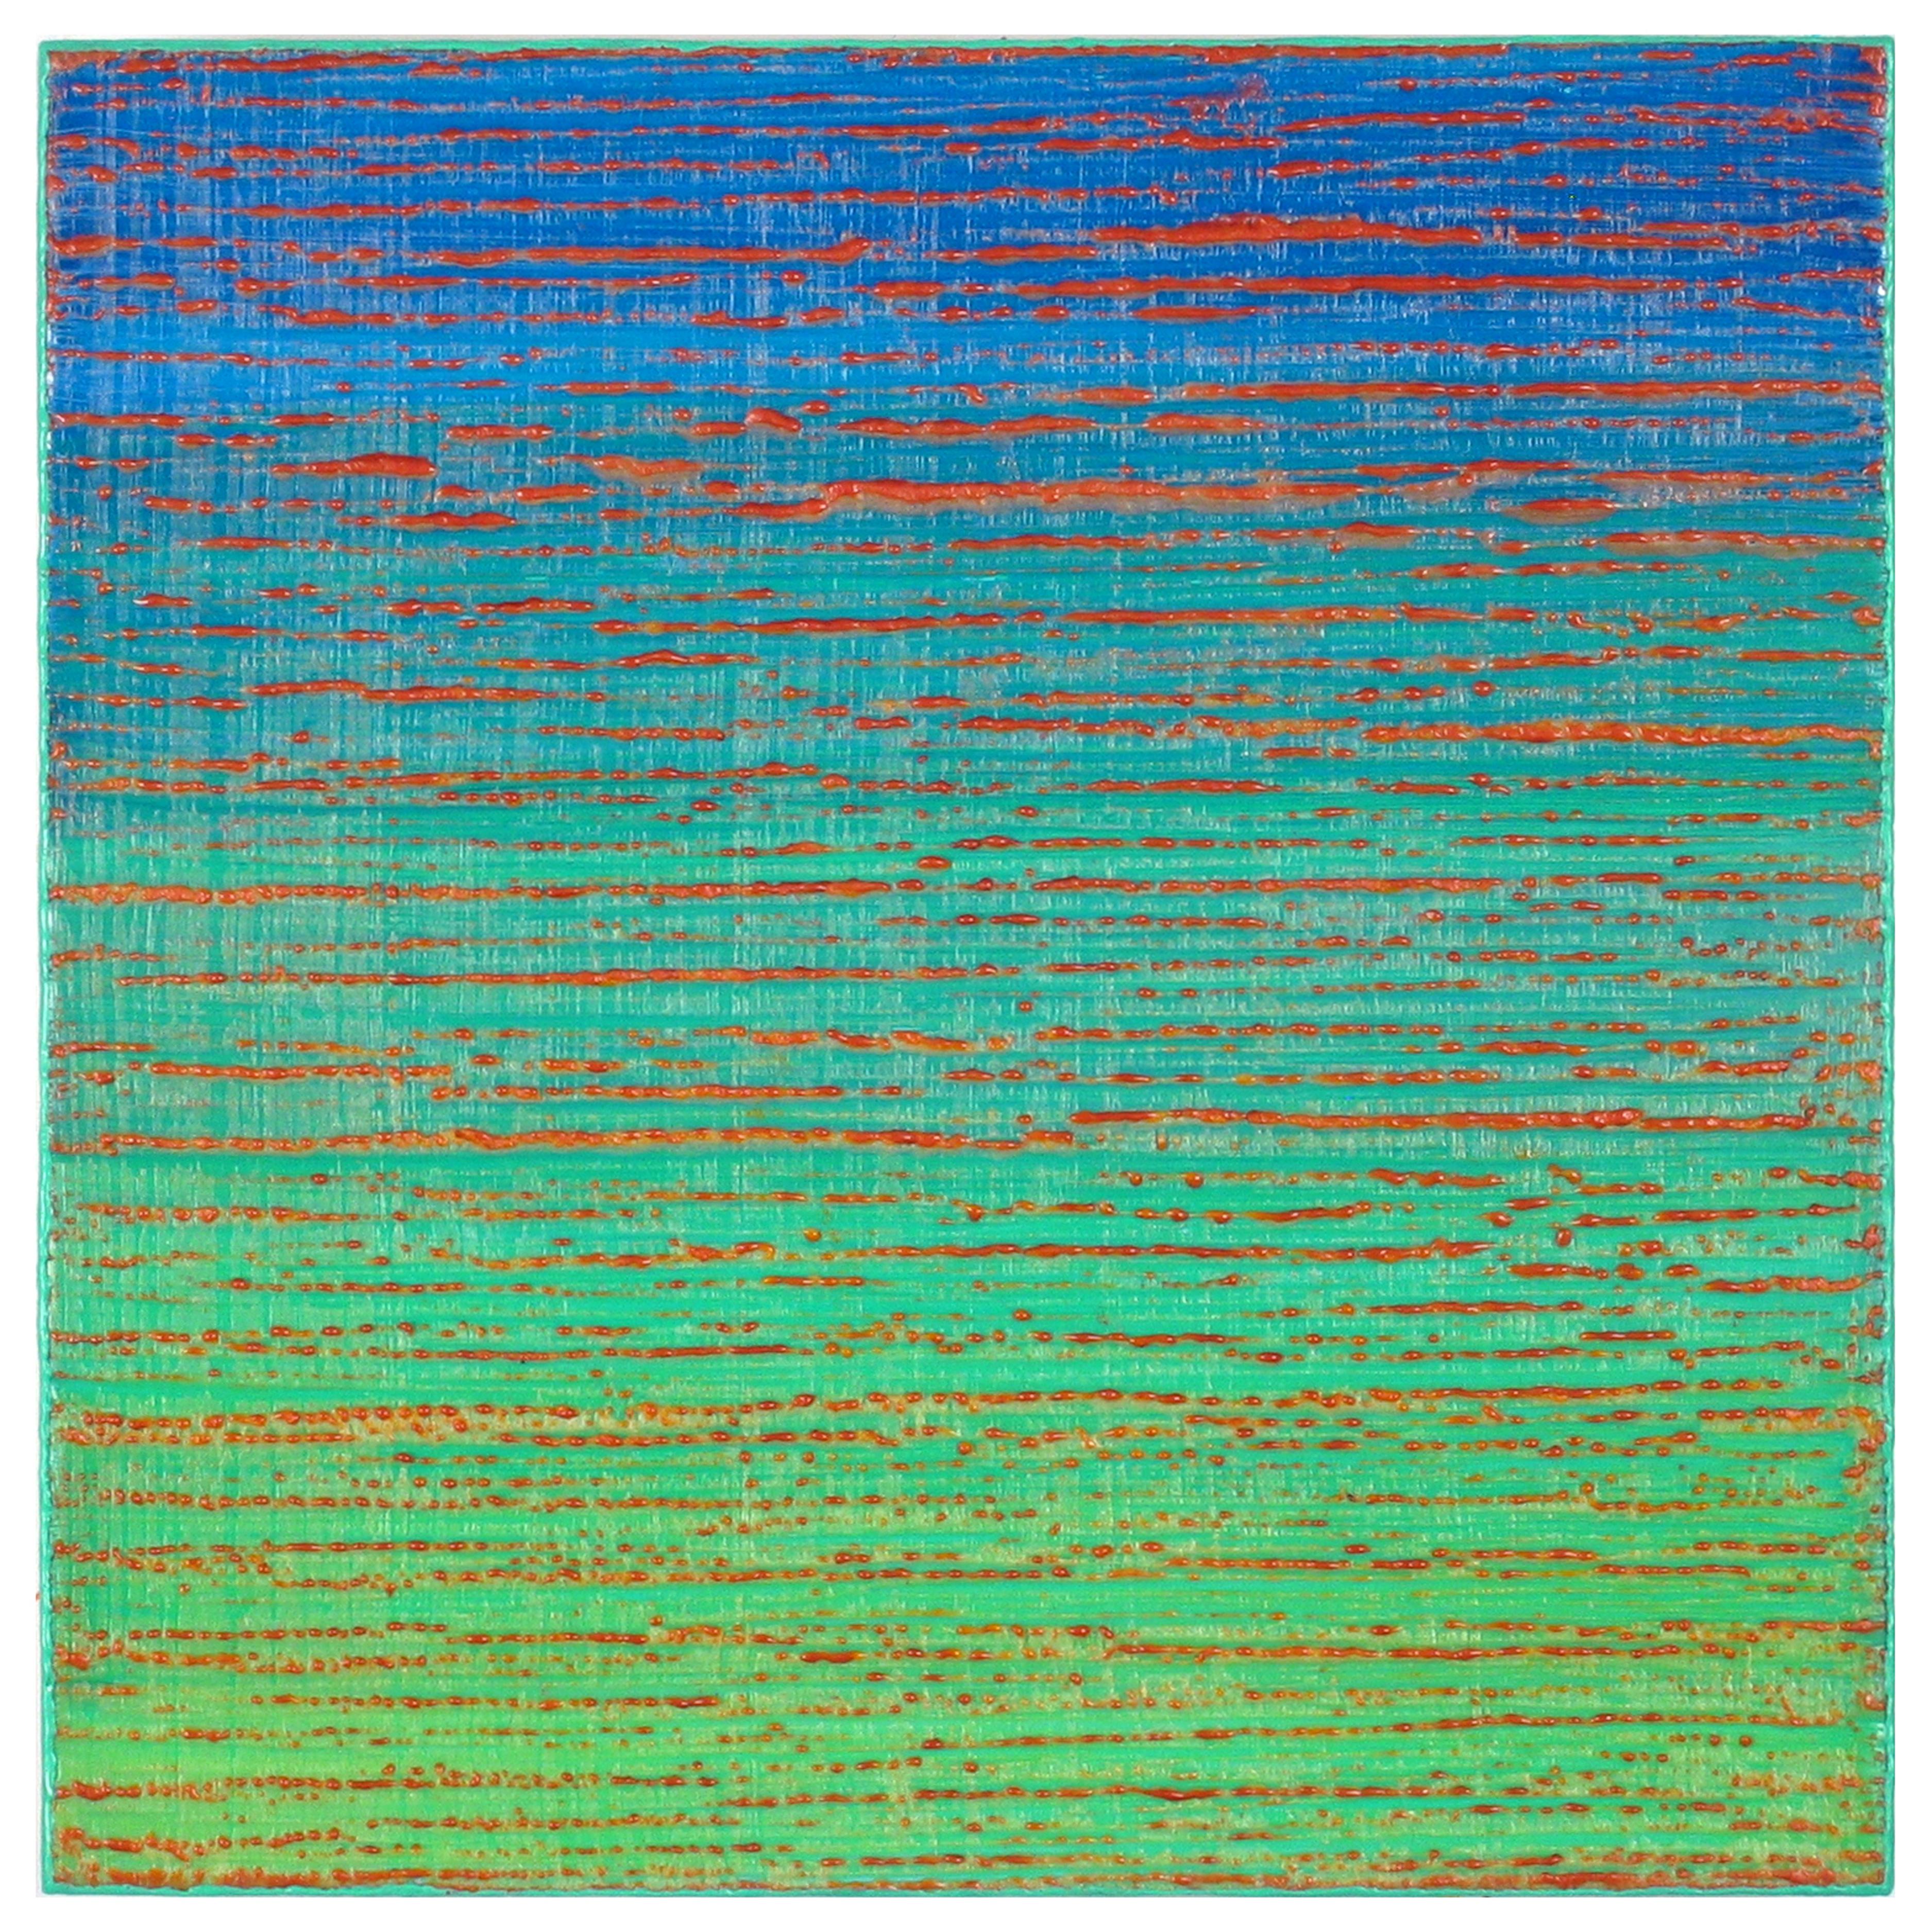 Abstract Painting Joanne Mattera - Silk Road 448, 2019, à l'encaustique sur panneau, 12 x 12 x 2 pouces